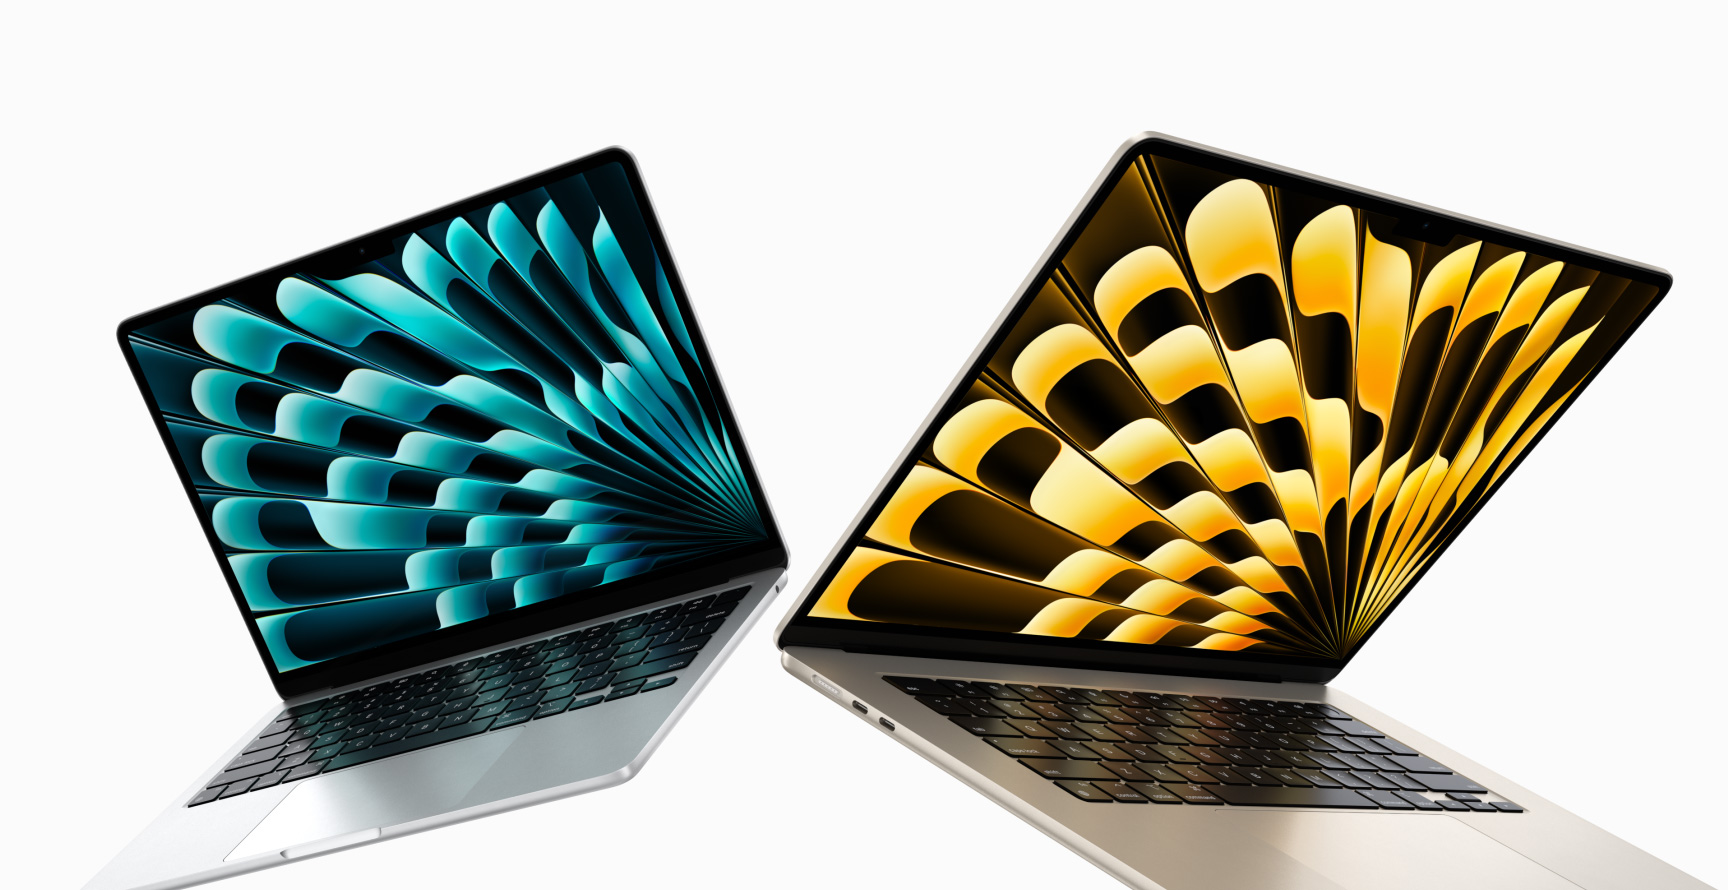 El MacBook Air de 15 pulgadas con chip M2 se puede comprar en Amazon con un descuento de hasta 250 dólares